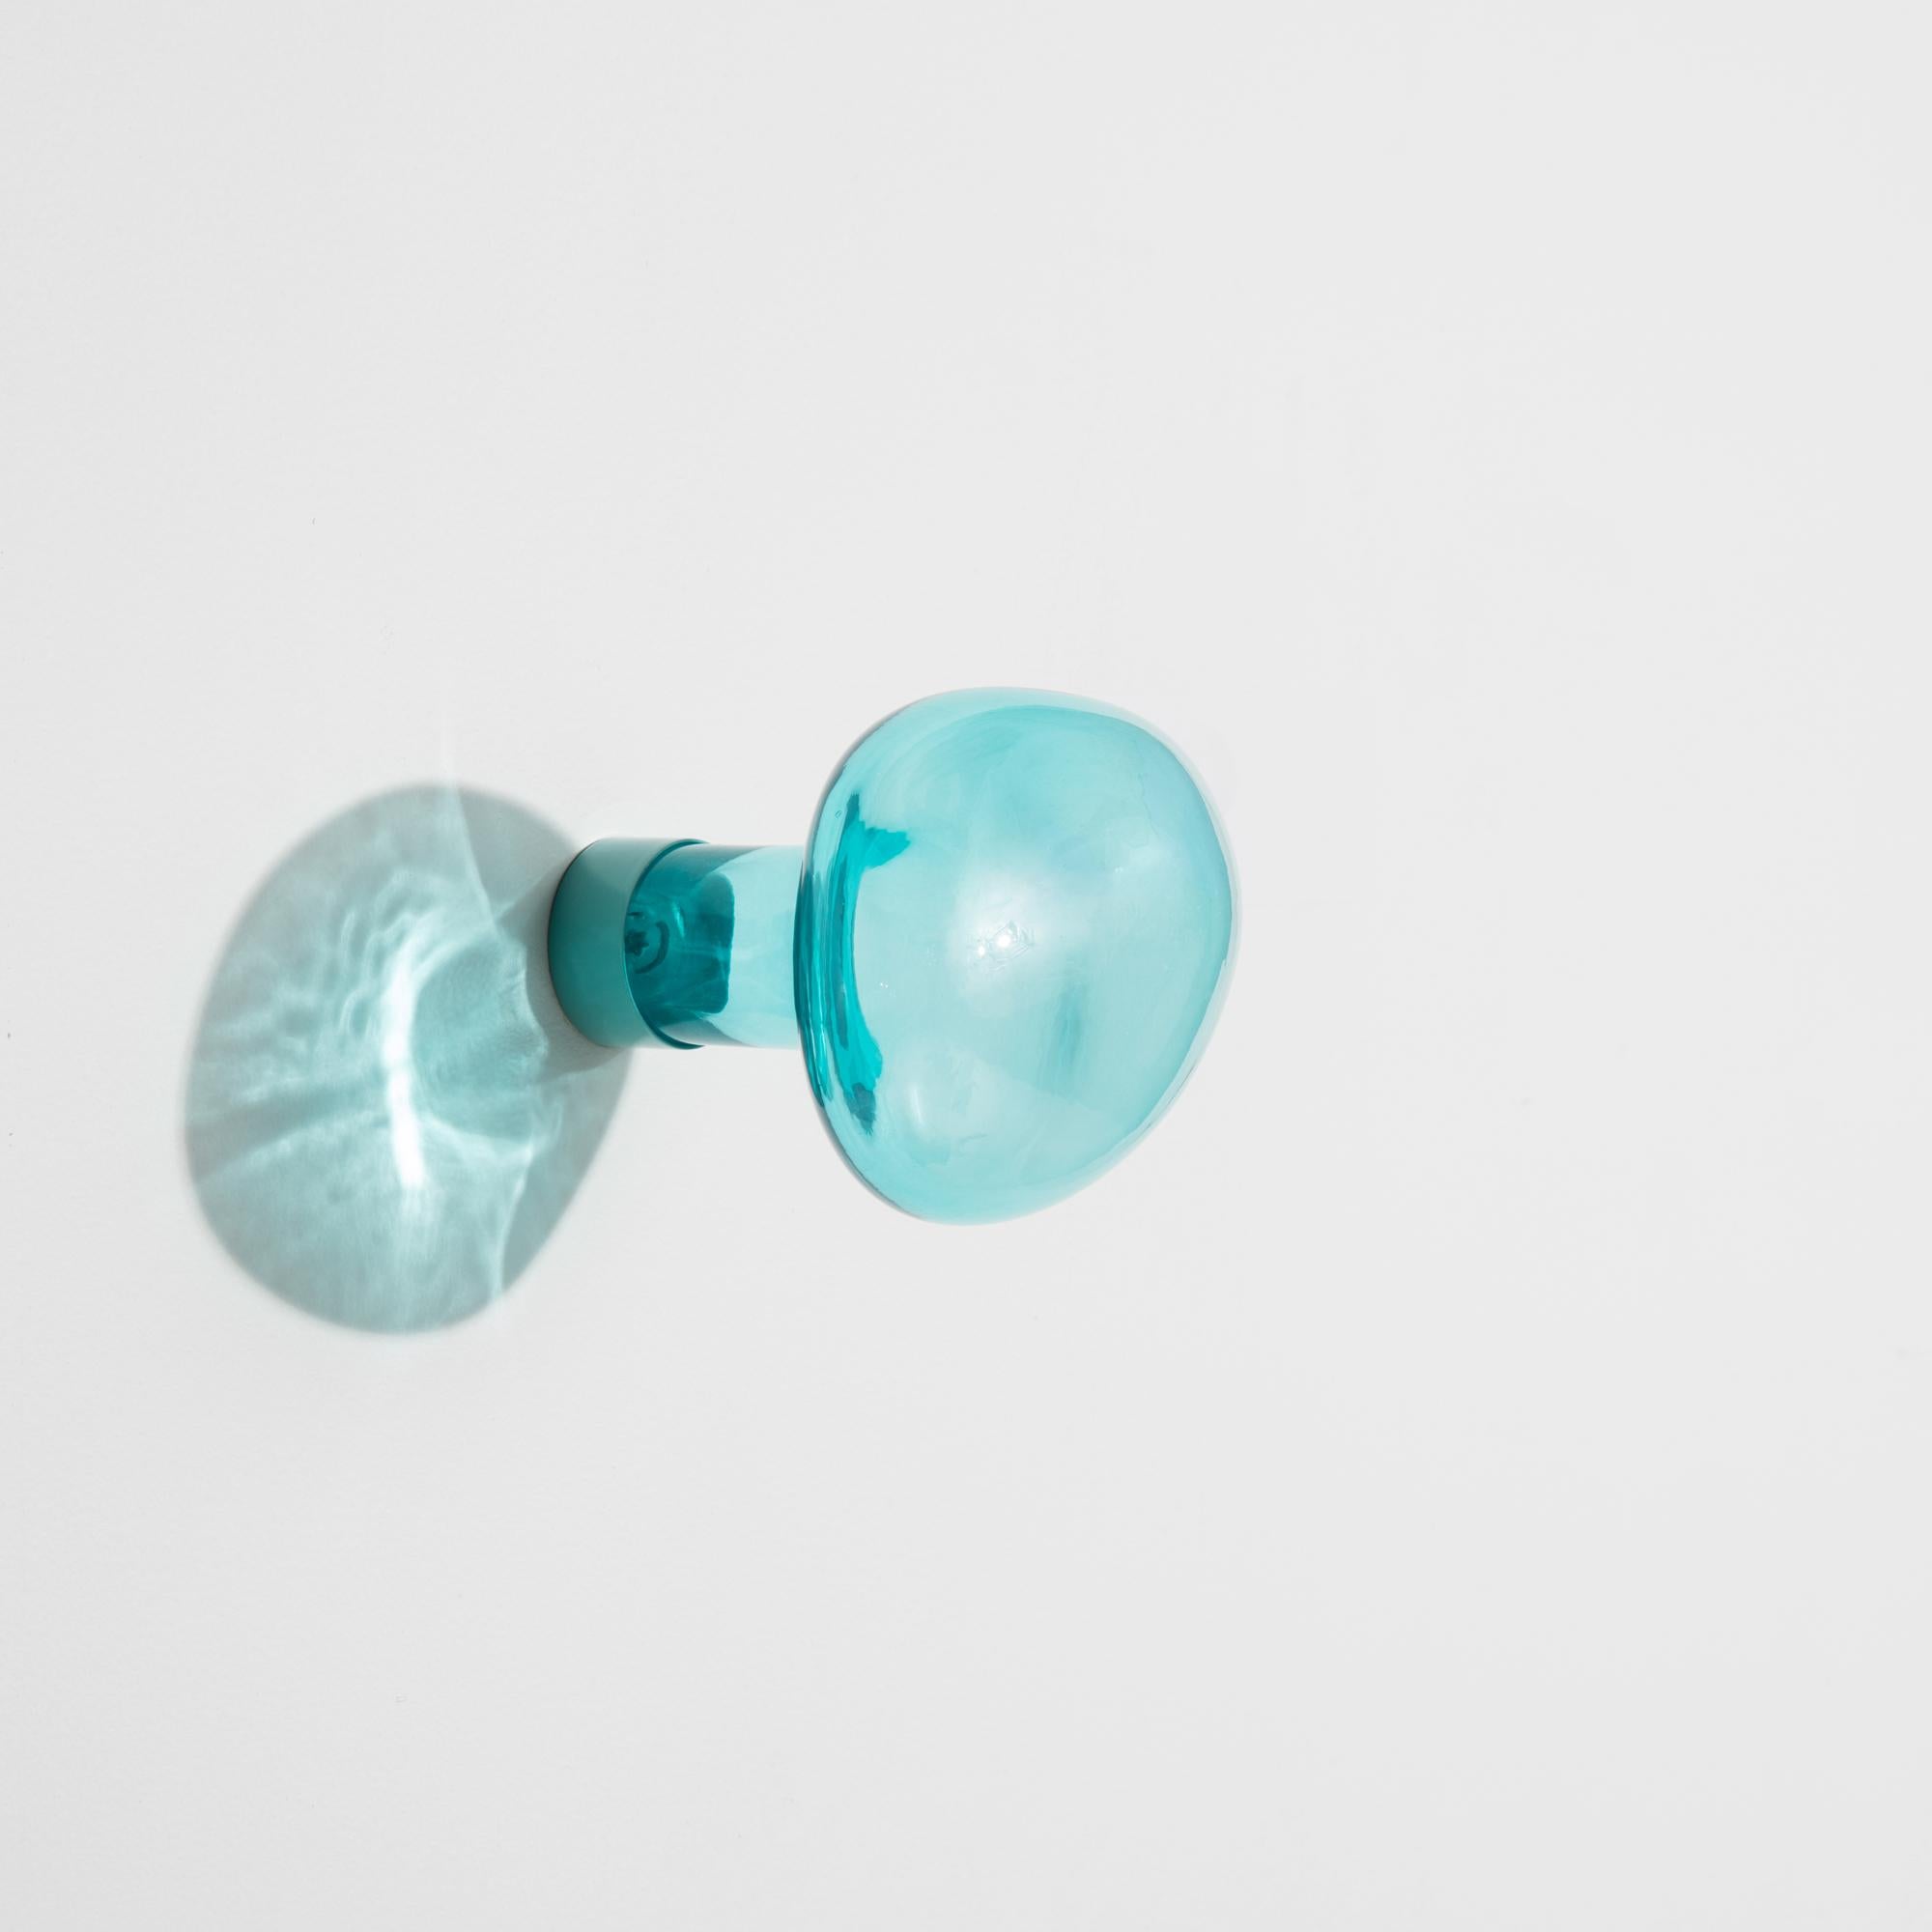 Polish PETITE FRITURE Bubble, Small Coat Hook, Transparent Blue, Vaulot & Dyèvre For Sale